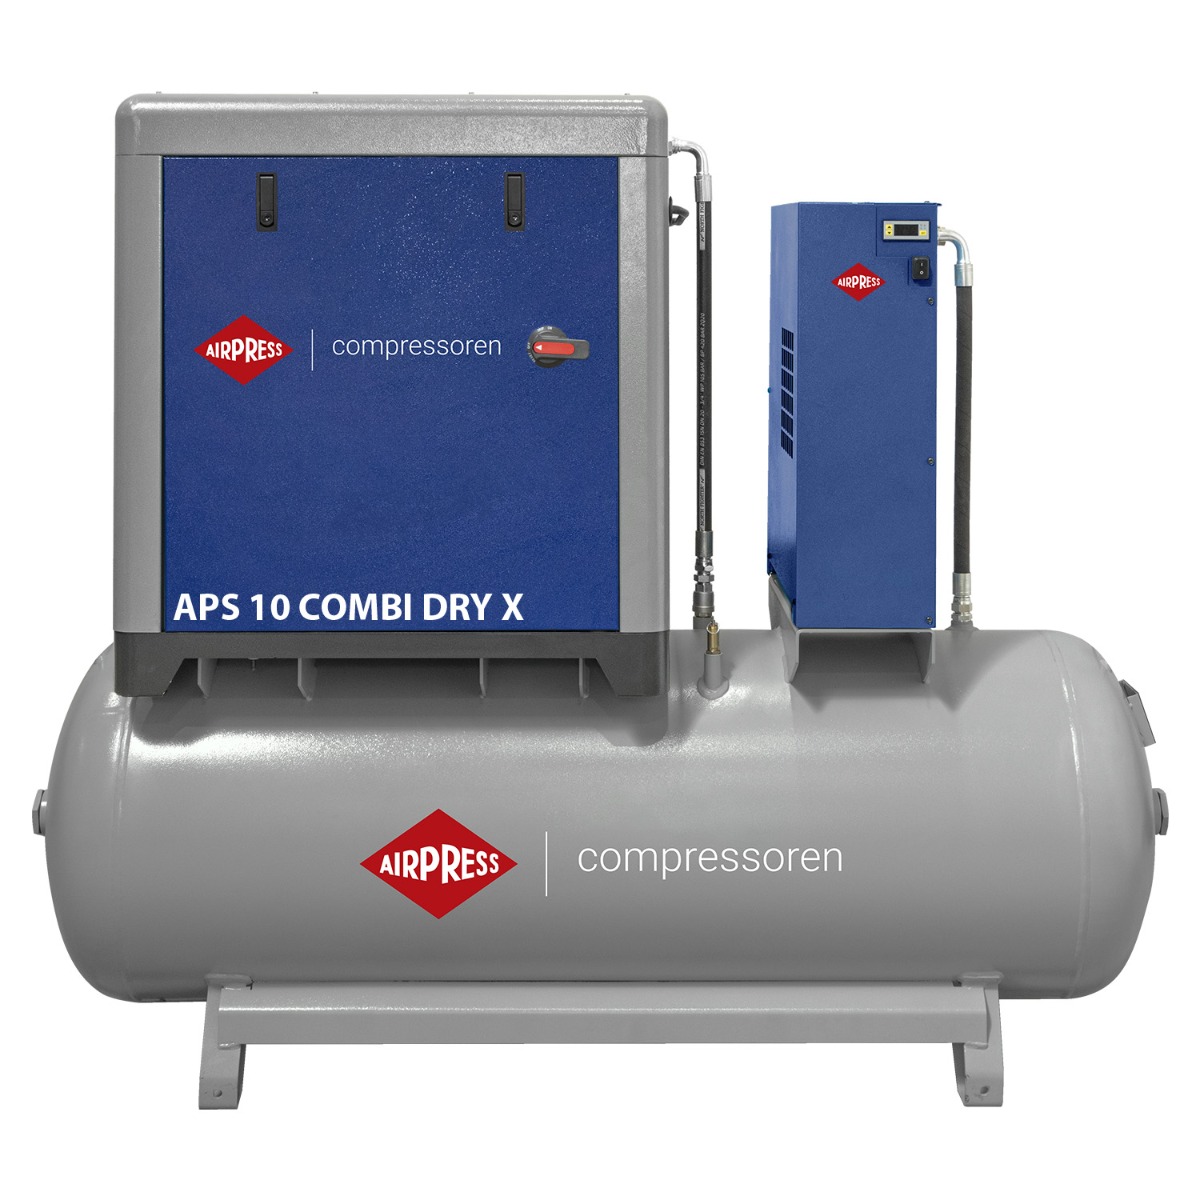 Compresor rotativo de tornillo APS 10 Combi Dry X de última generación